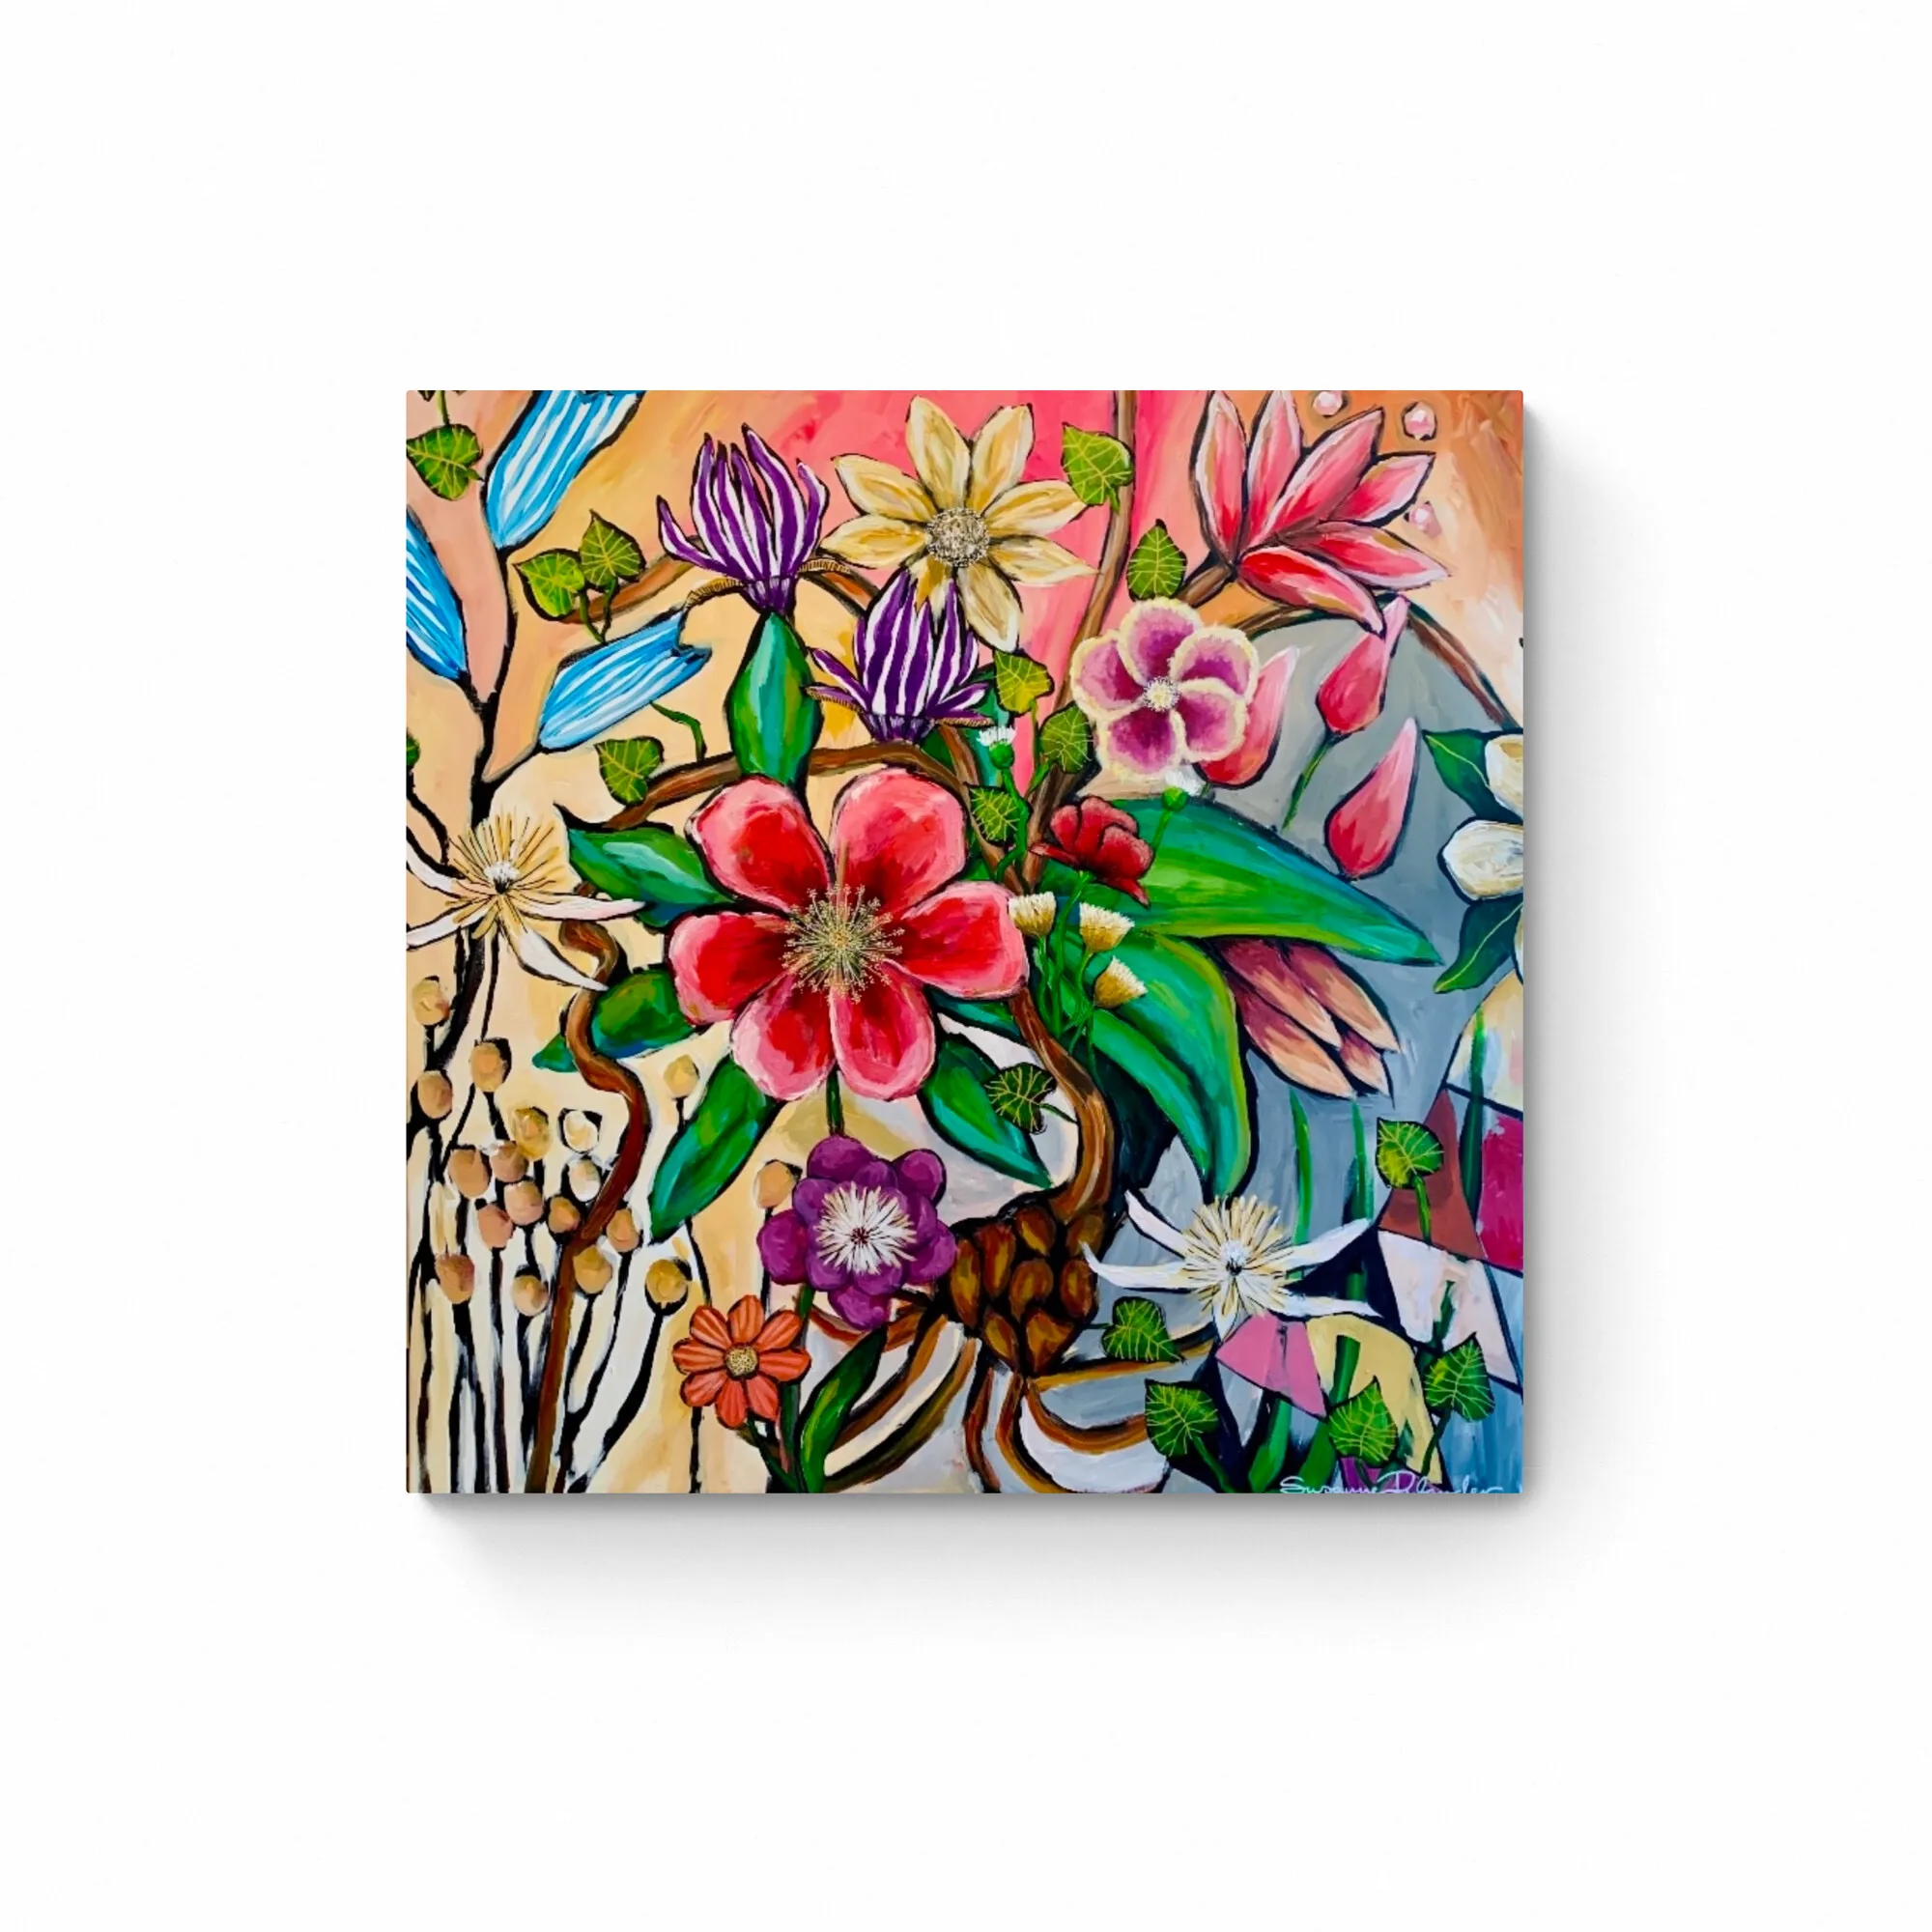 Flower Power abstrakt maleri